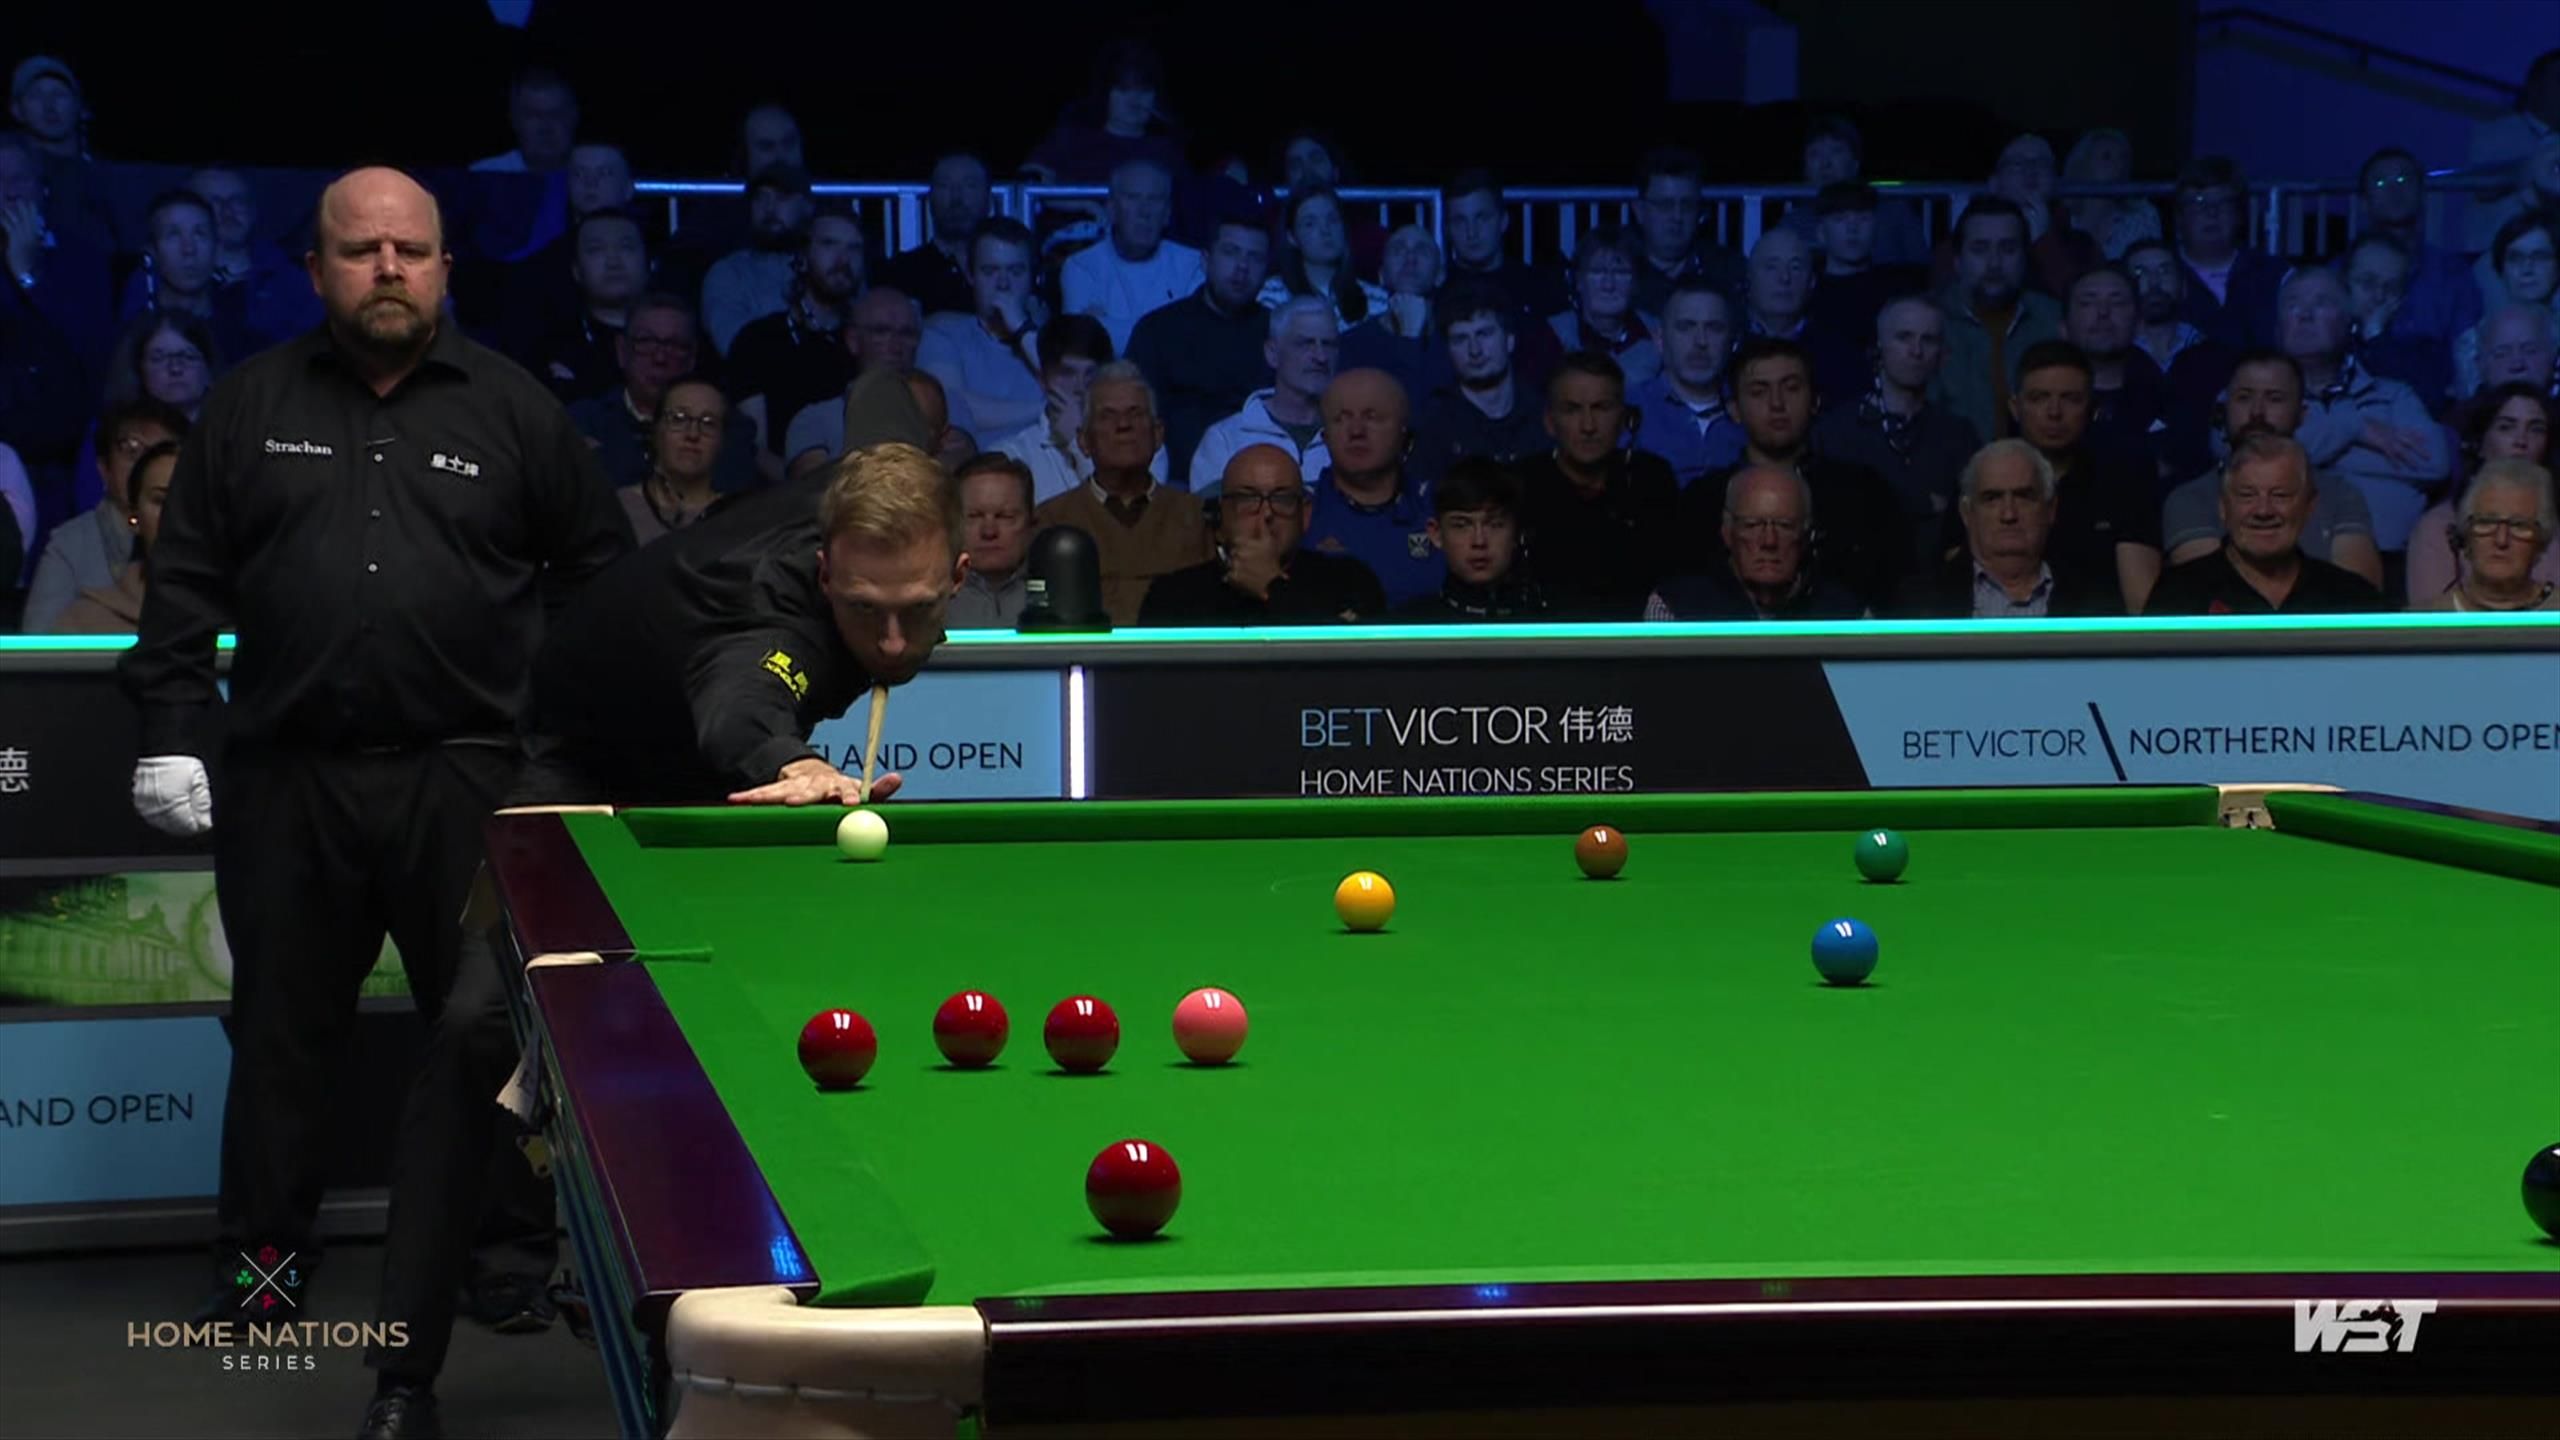 Northern Ireland Open 2023 Judd Trump macht extrem schwere Rote an der Bande - Snooker Video